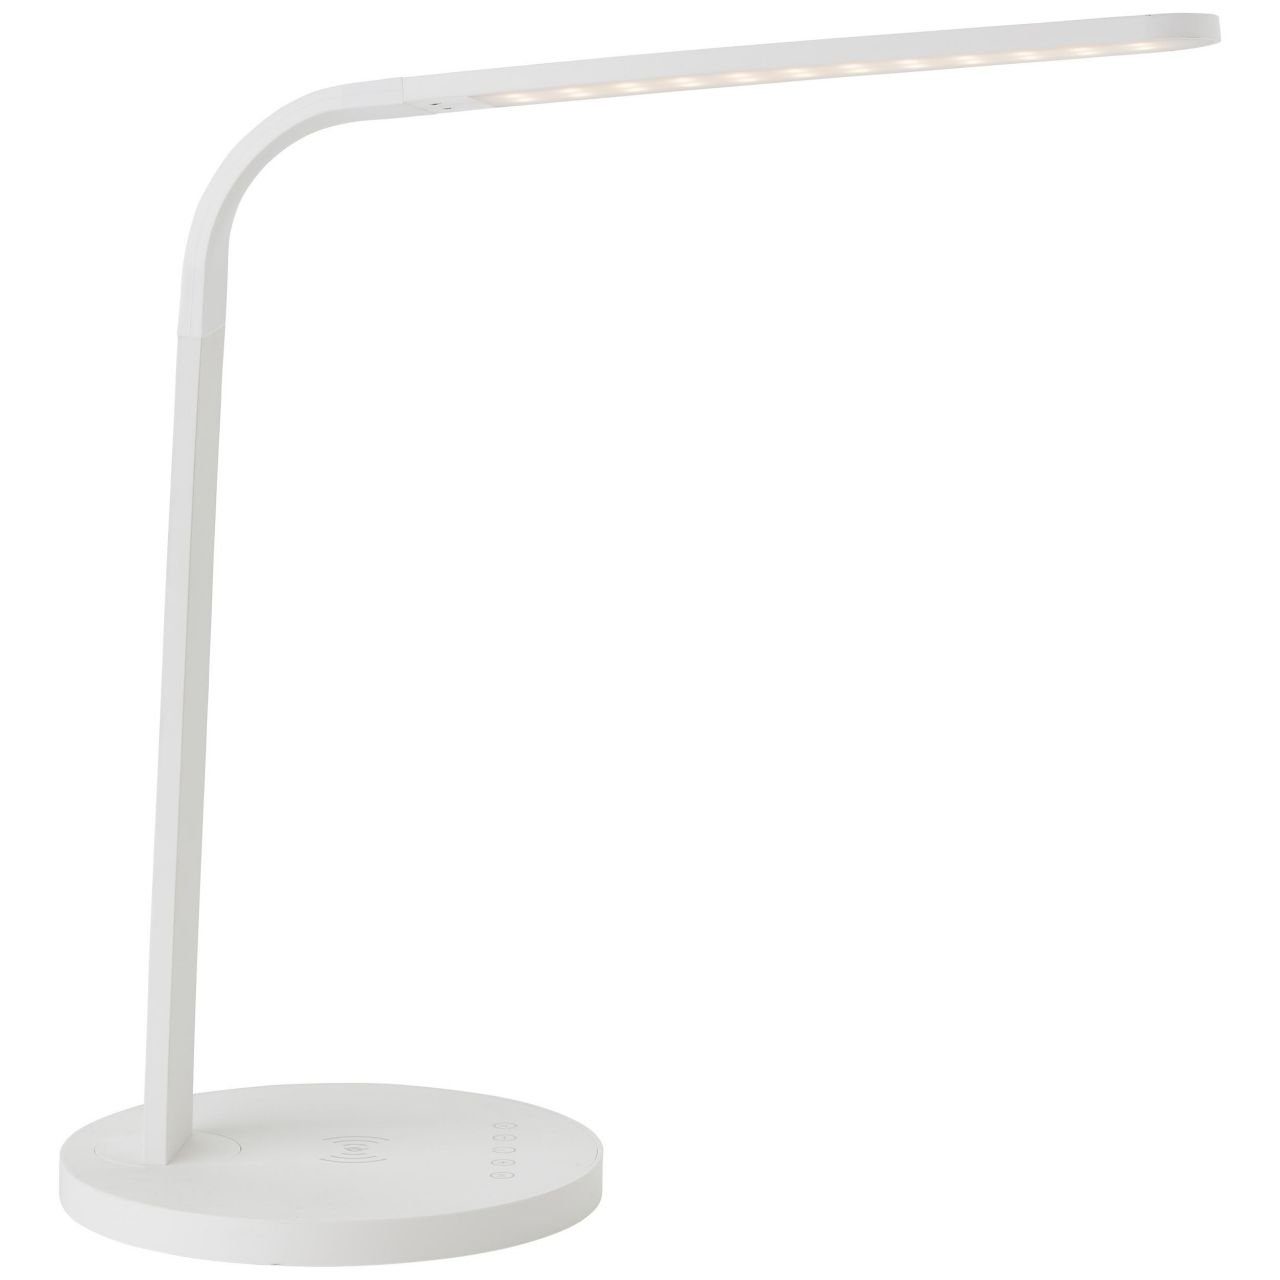 LED Lampe, 1x 2900-5300K, Idelle, Tischleuchte Induktionsladeschale Tischleuchte mit Brilliant LED i weiß, Idelle